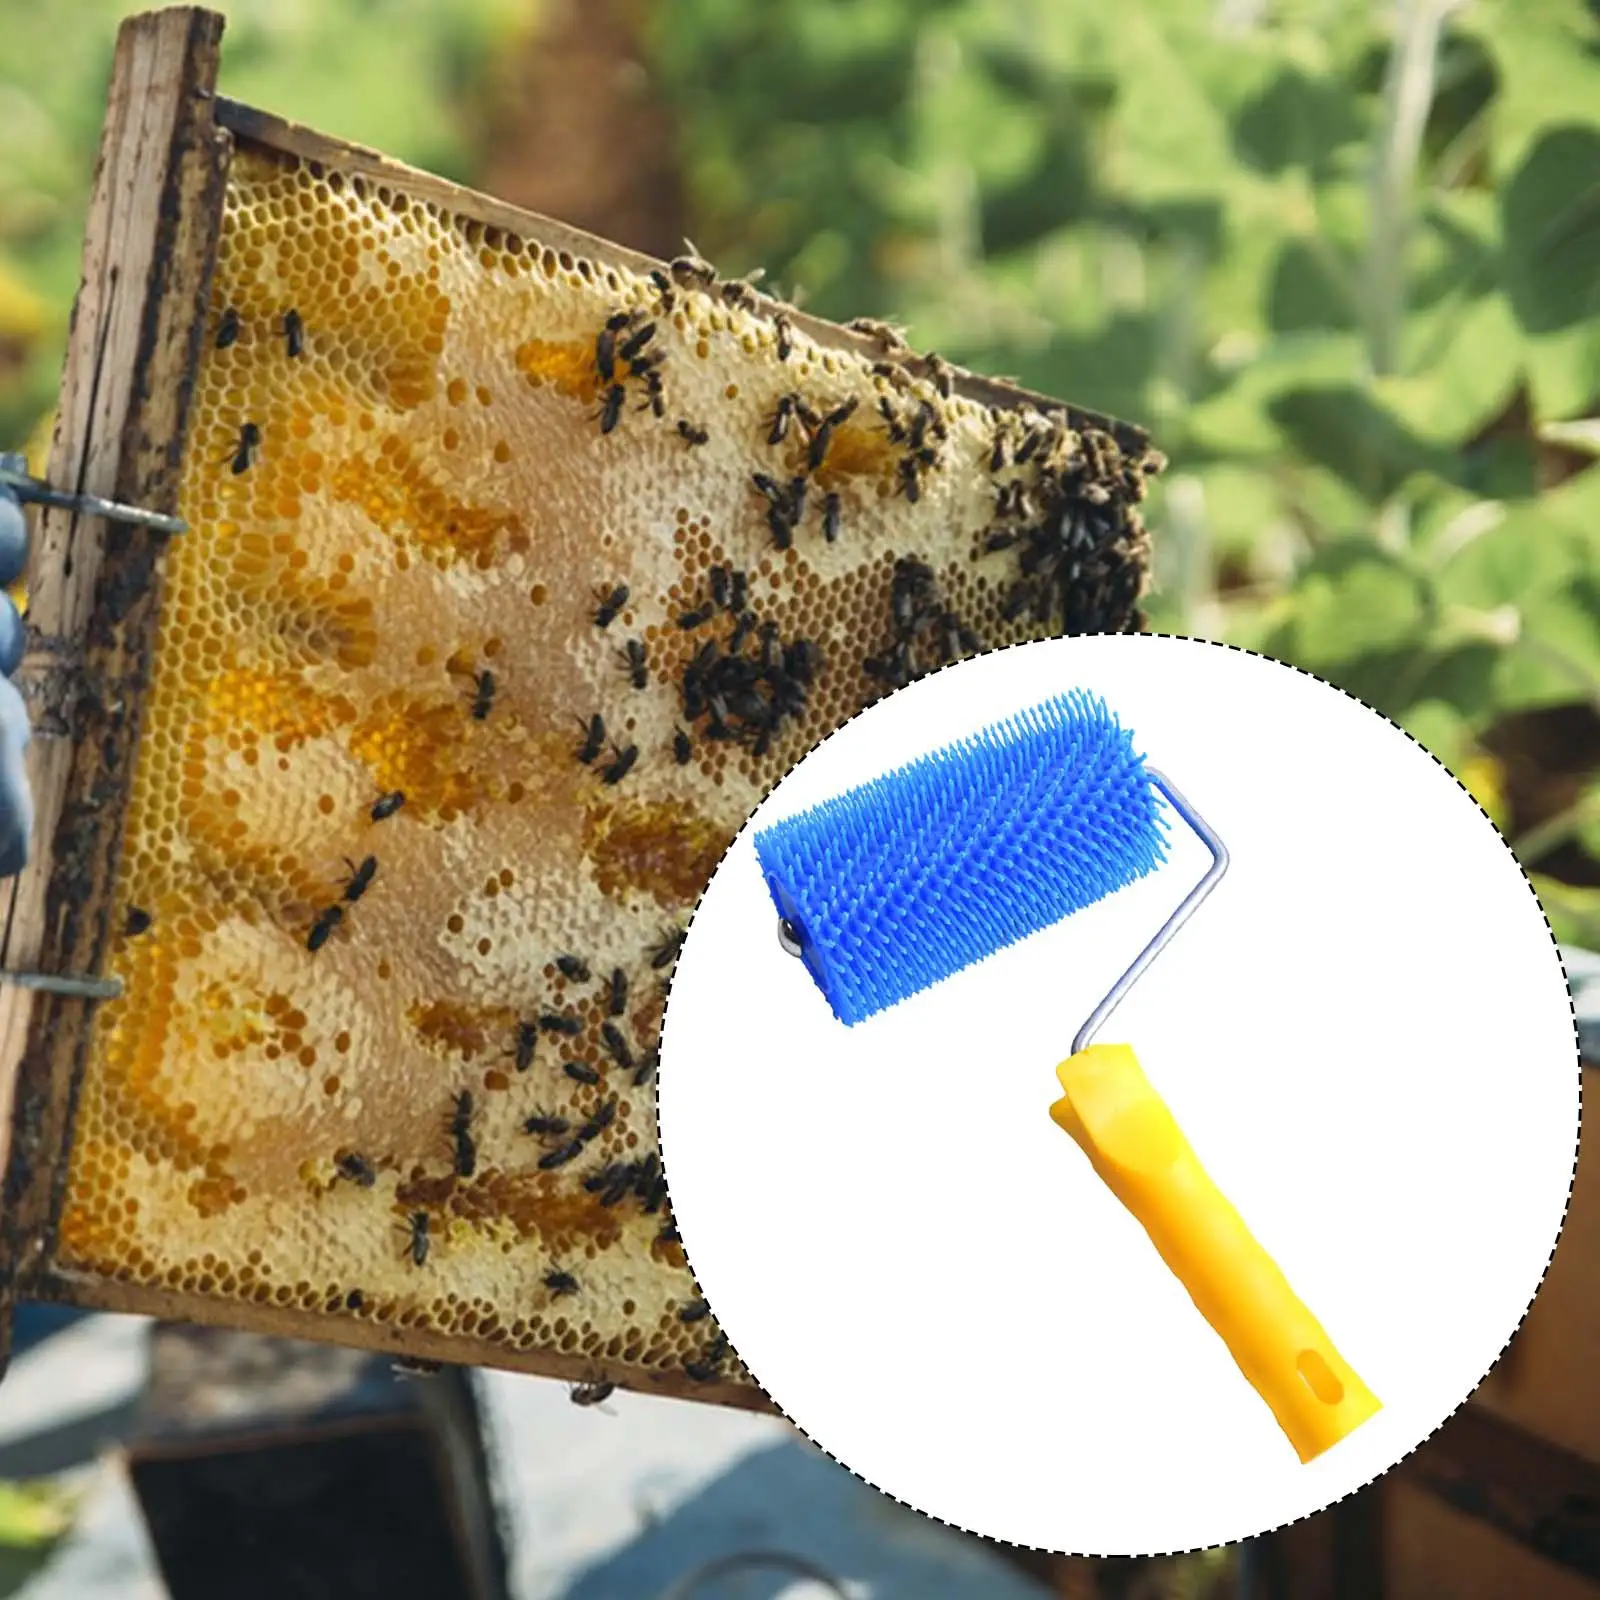 Uncapping Roller Honey Harvesting Equipment Extracting Bee Beekeeper Hand Tool Beekeeping Equipment Honey Extractor Professional